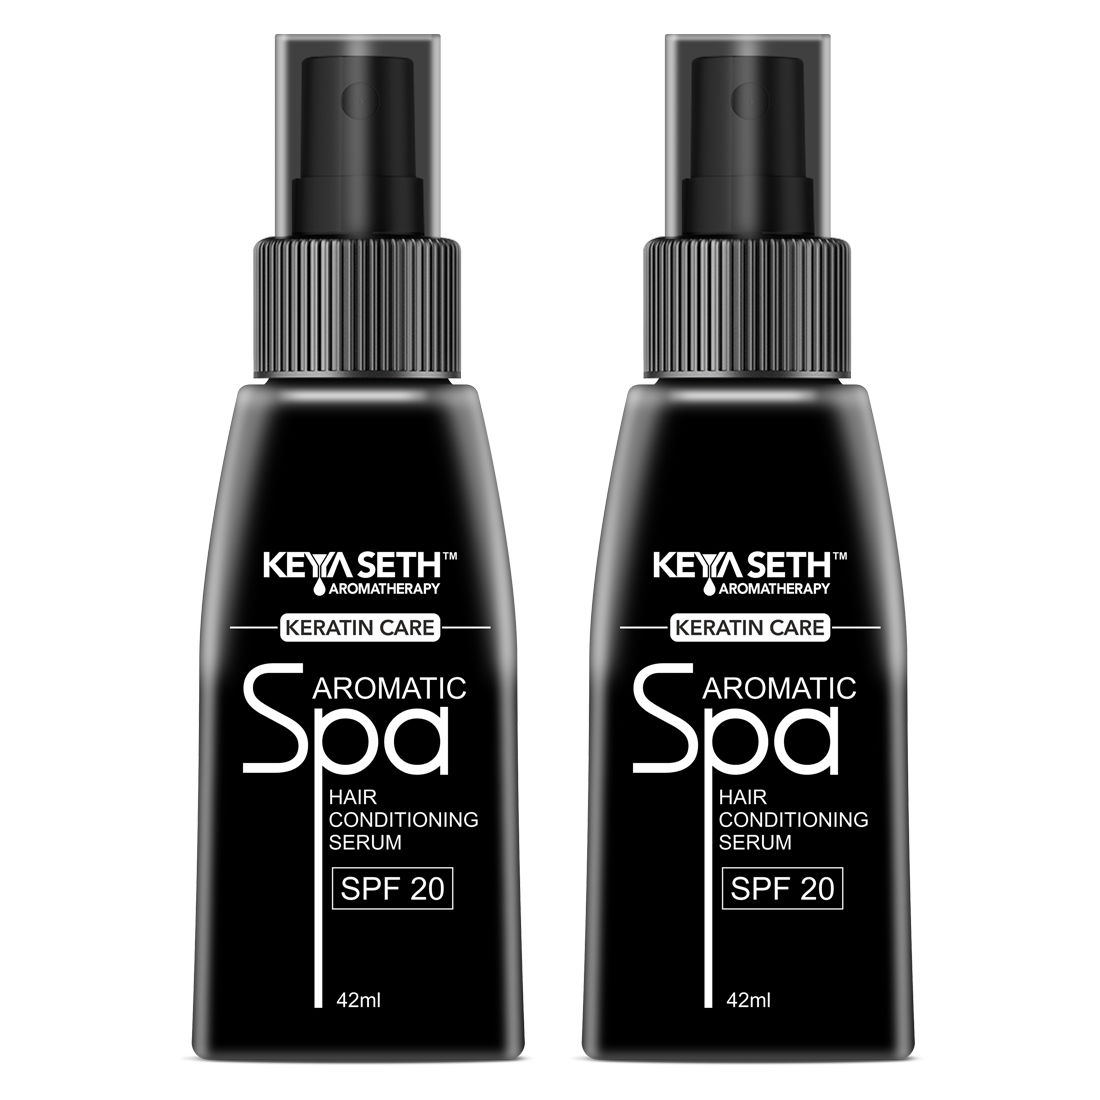 Details 131+ keya seth hair spa cream best